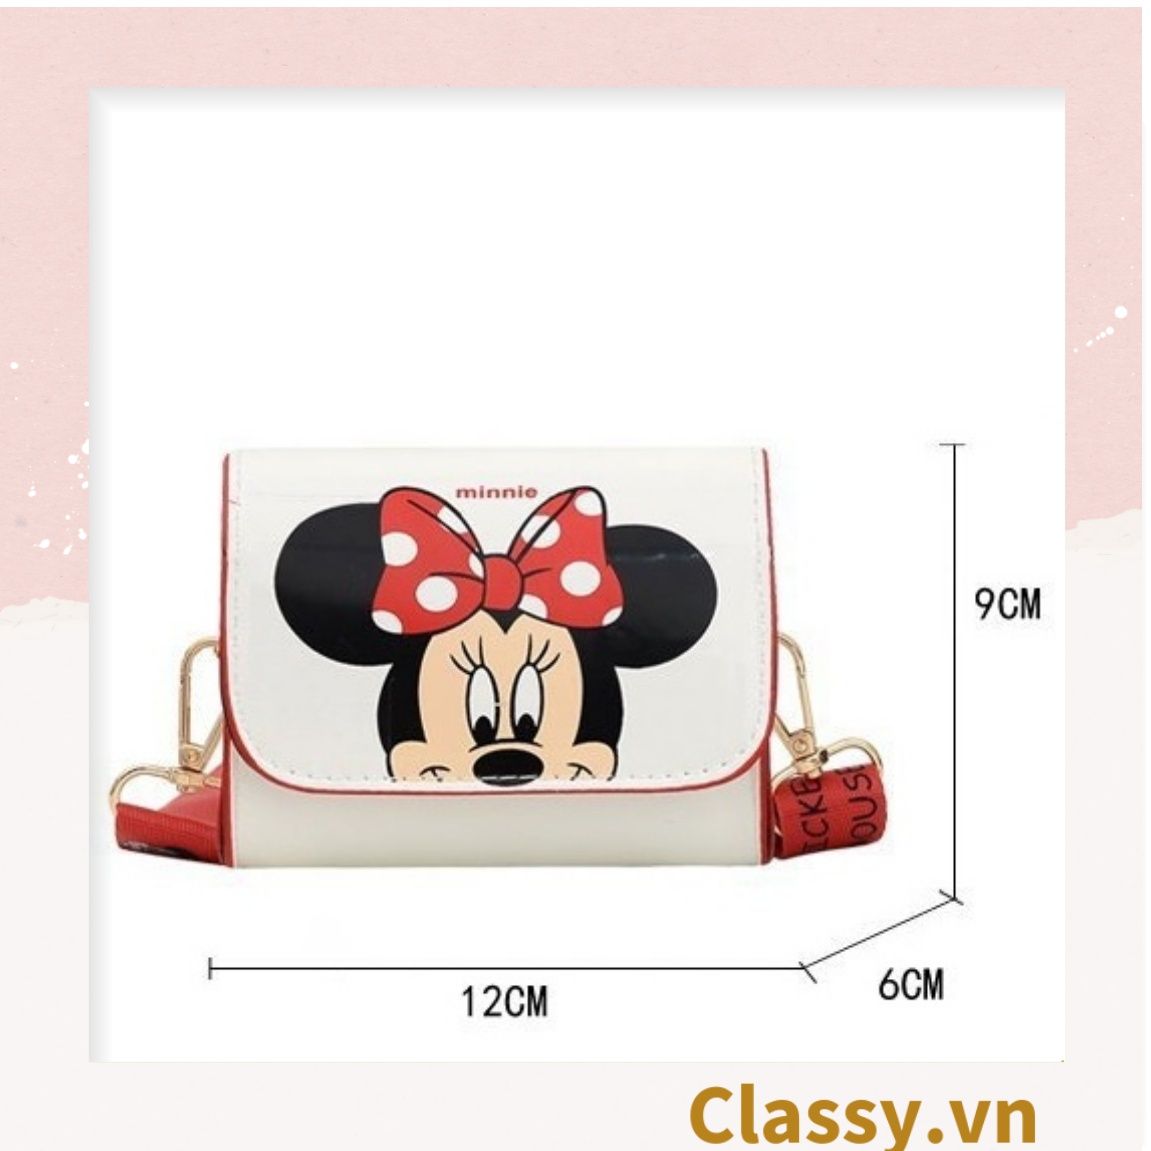  Túi mini hình vuông nhiều màu họa tiết hoạt hình Disney siêu dễ thương T584 